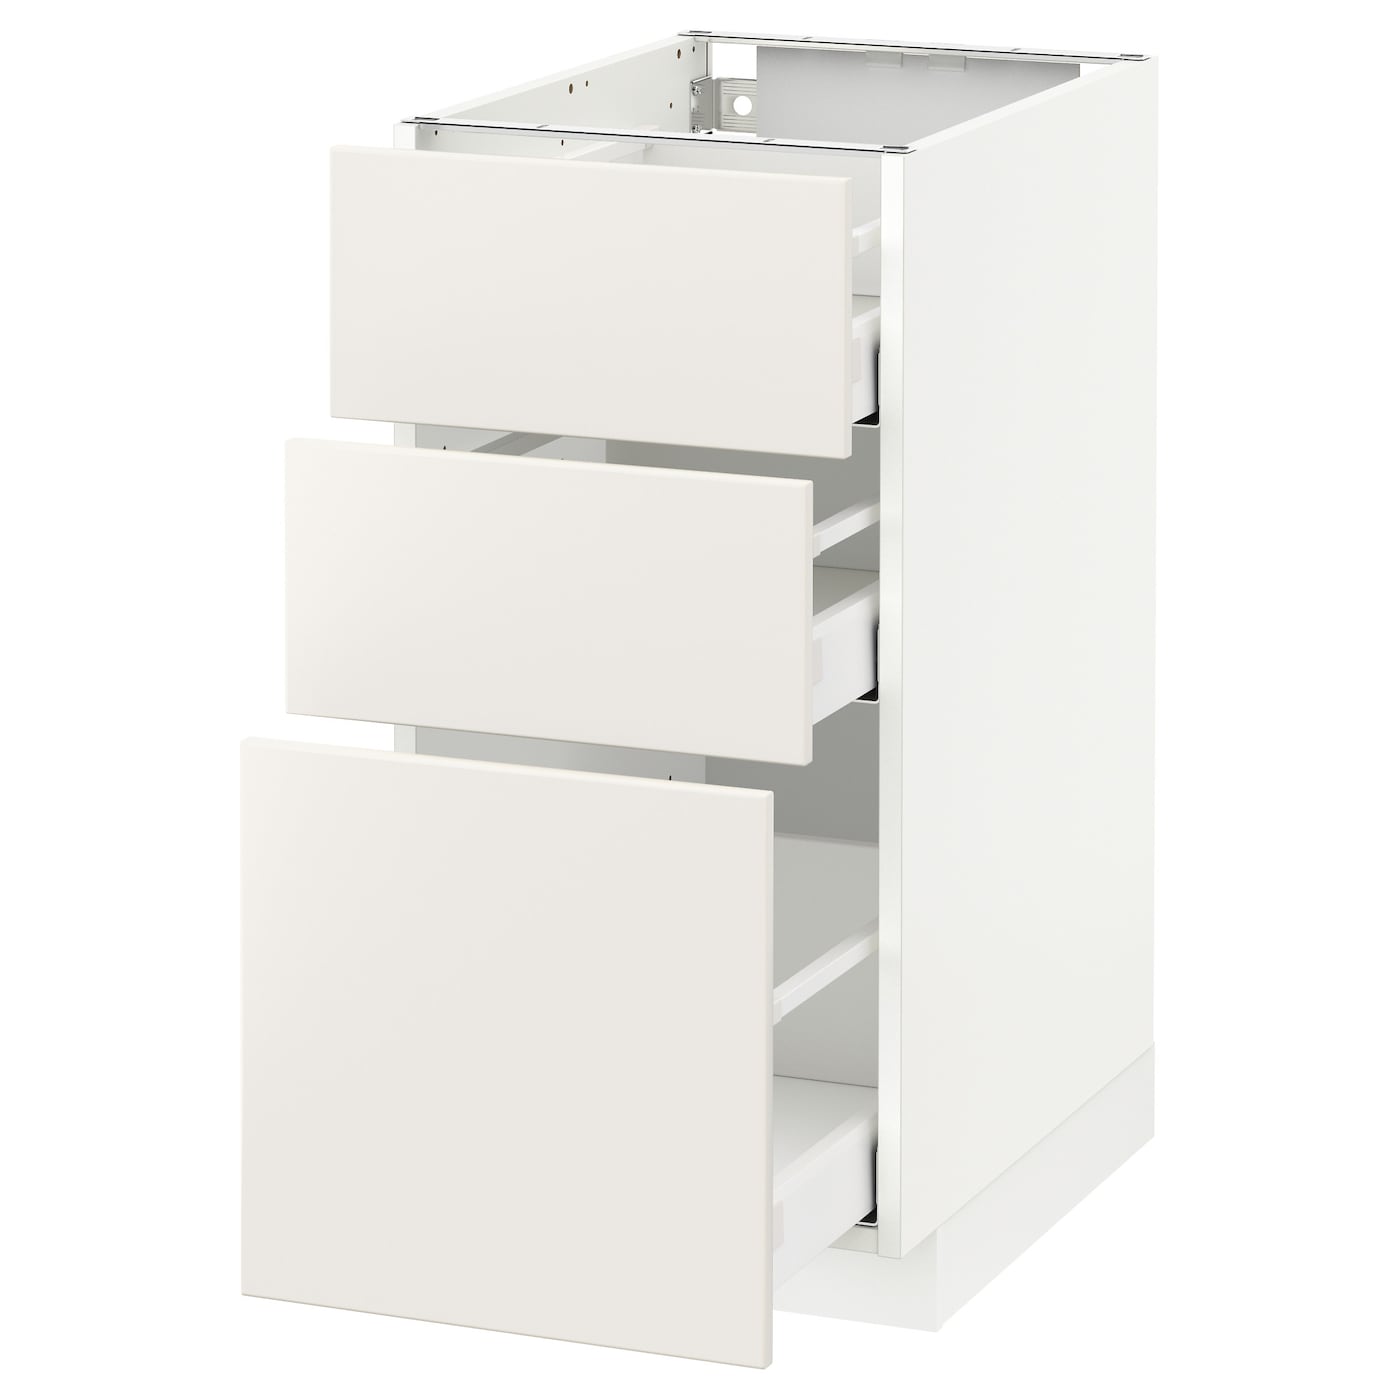 Напольный кухонный шкаф  - IKEA METOD MAXIMERA, 88x62x40см, белый, МЕТОД МАКСИМЕРА ИКЕА